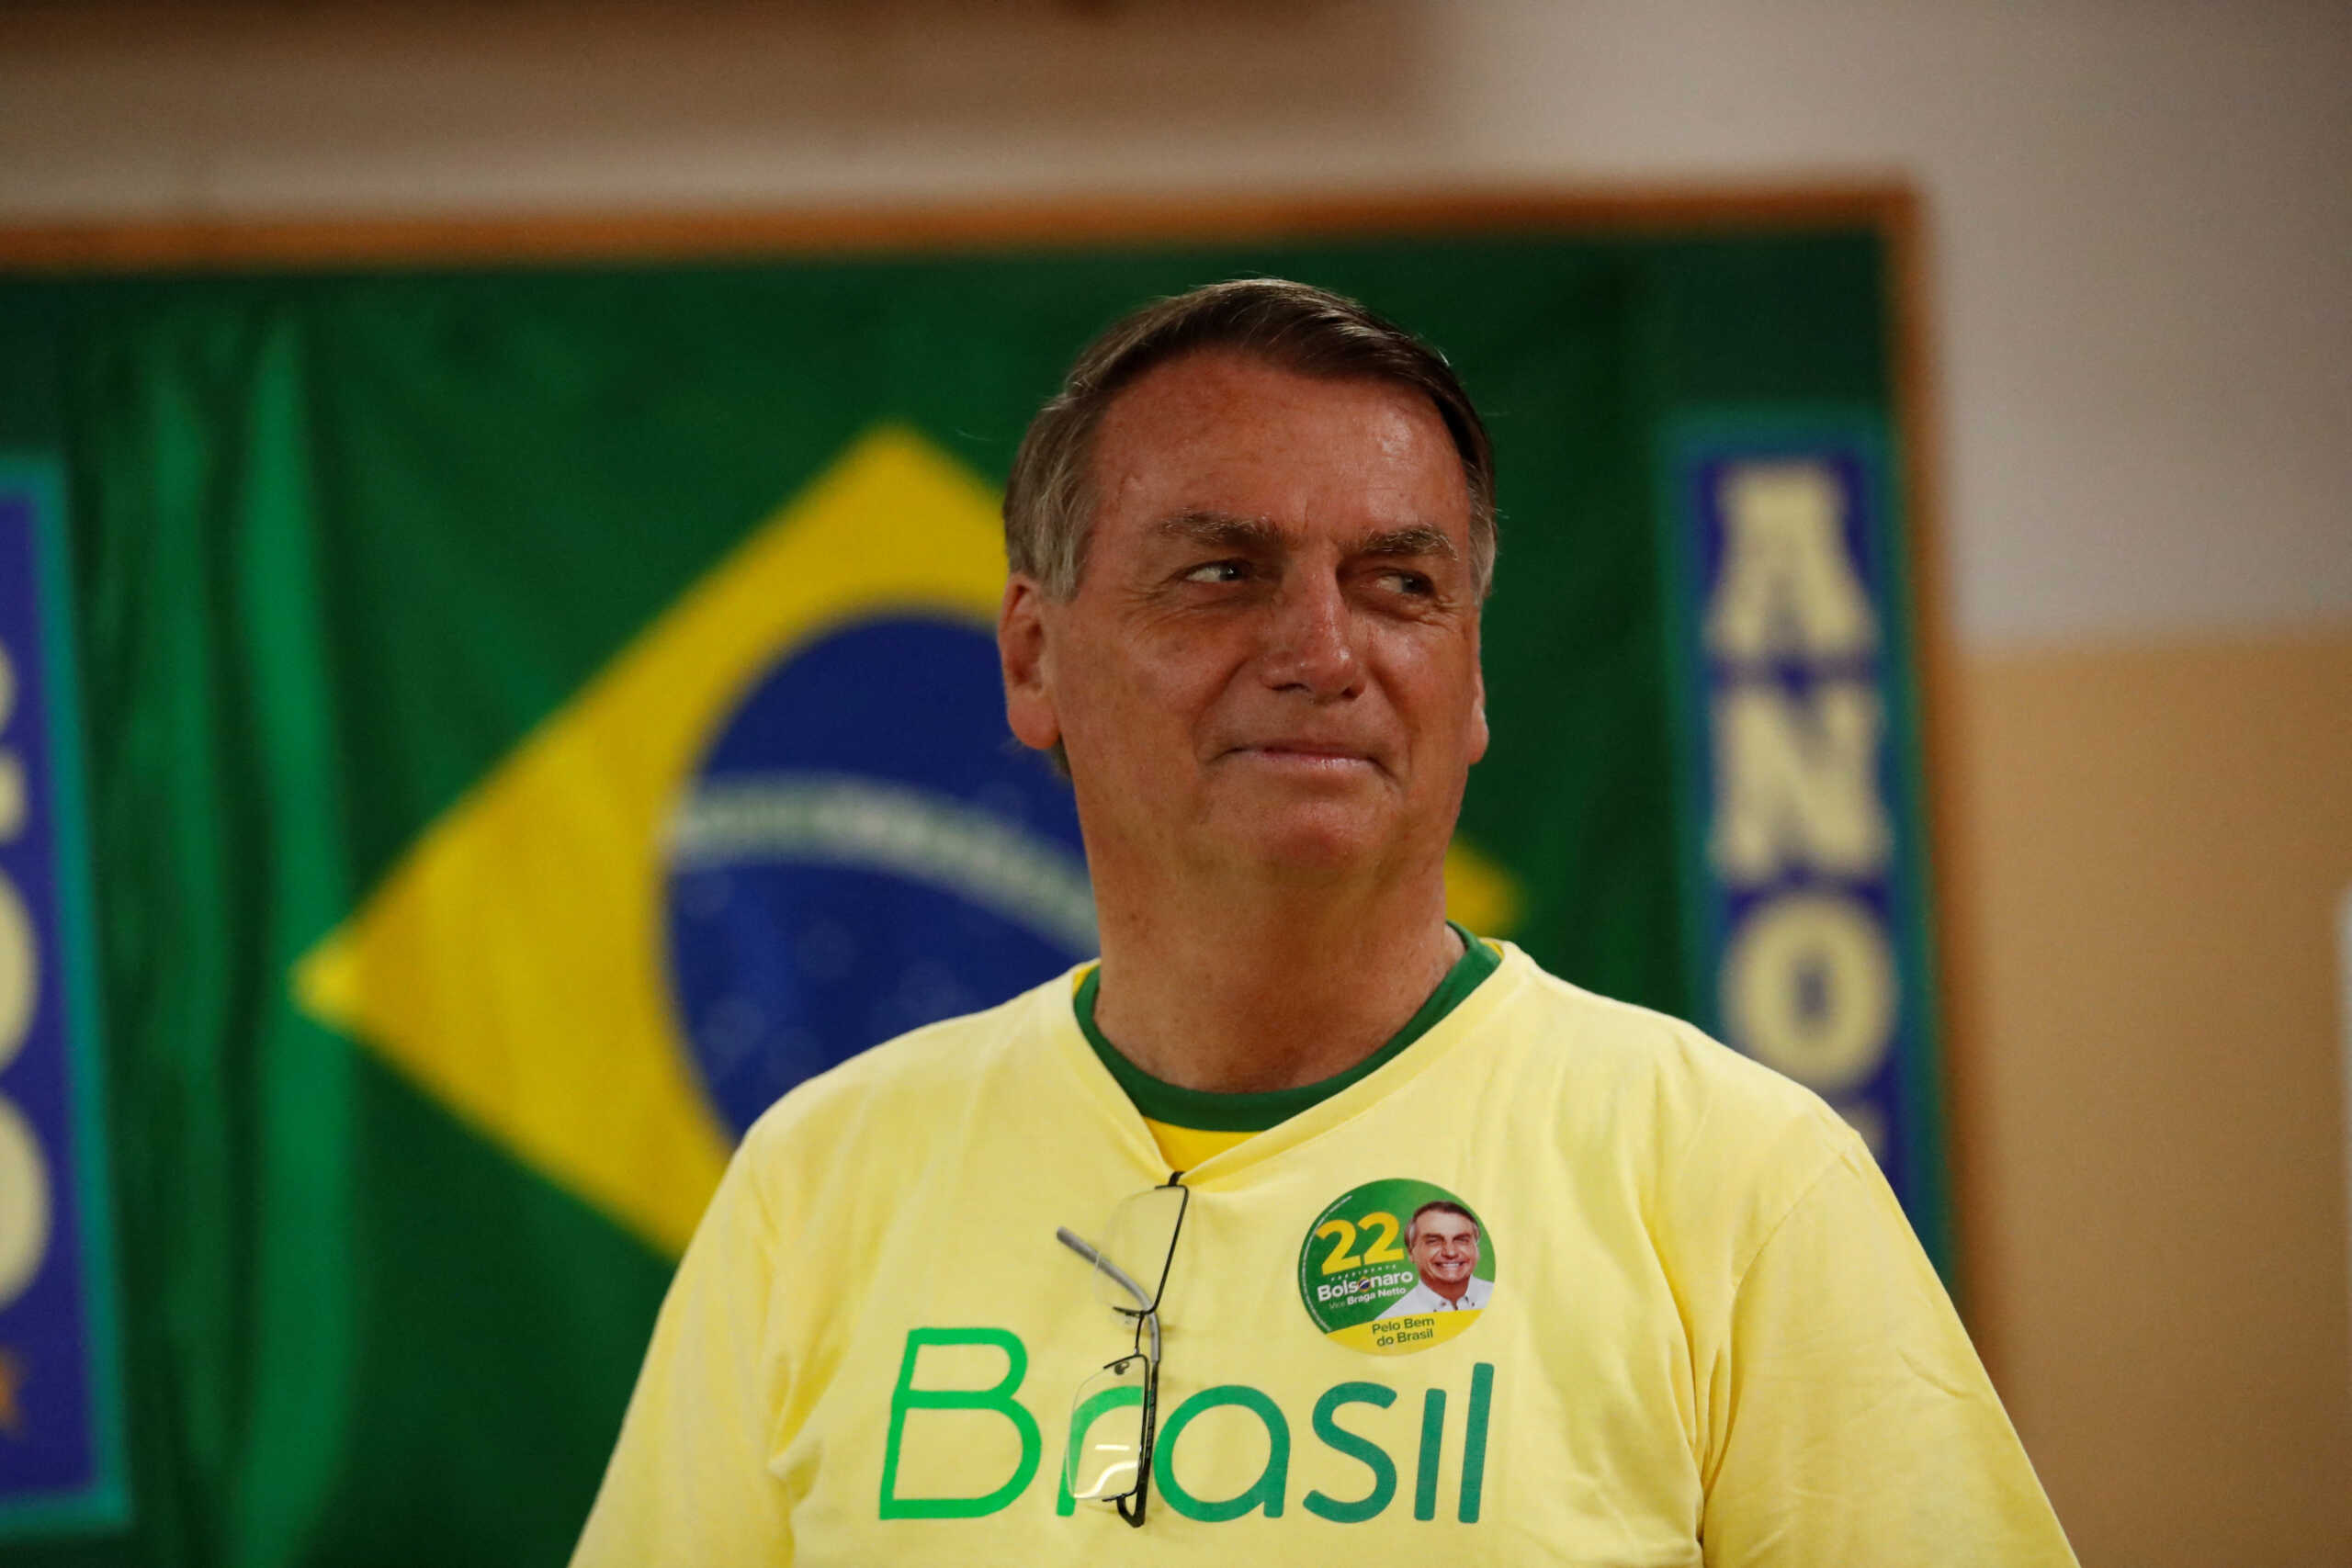 Βραζιλία: Ο Ζαΐρ Μπολσονάρο παραδέχτηκε ότι «έκανε κάποια λάθη» όσο ήταν πρόεδρος